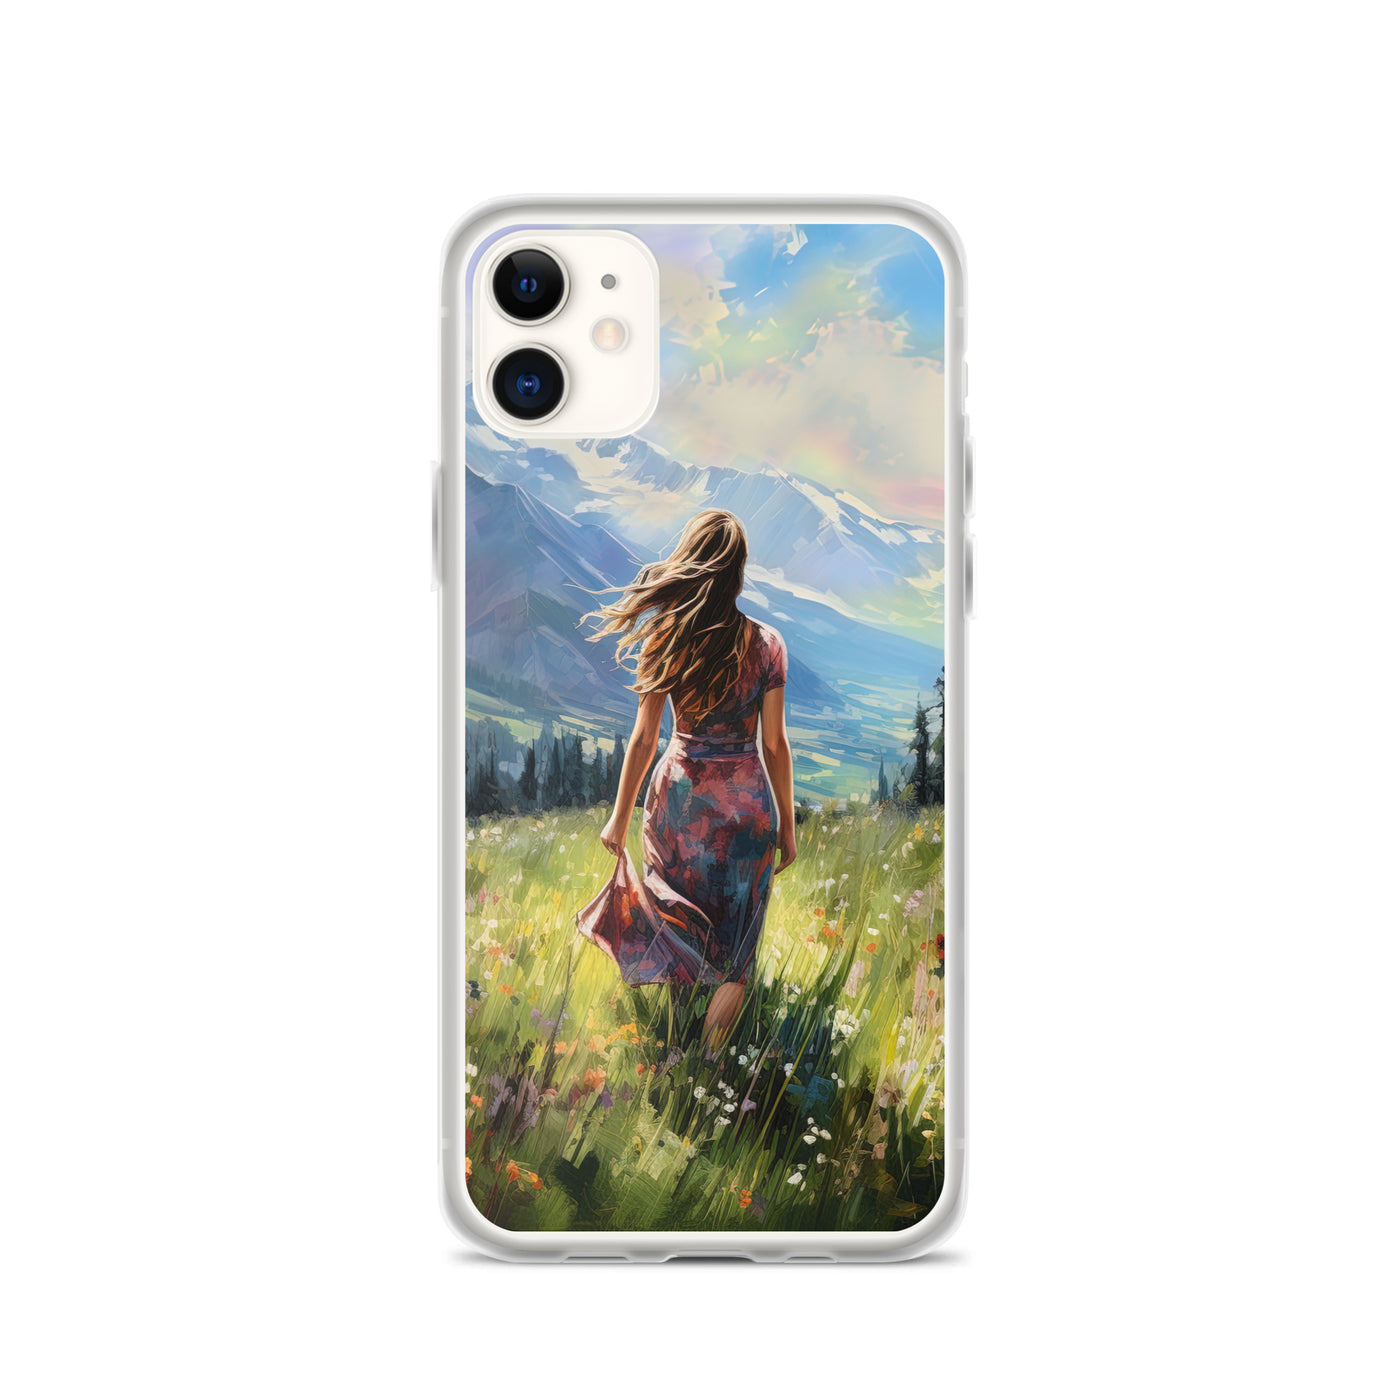 Frau mit langen Kleid im Feld mit Blumen - Berge im Hintergrund - Malerei - iPhone Schutzhülle (durchsichtig) berge xxx iPhone 11